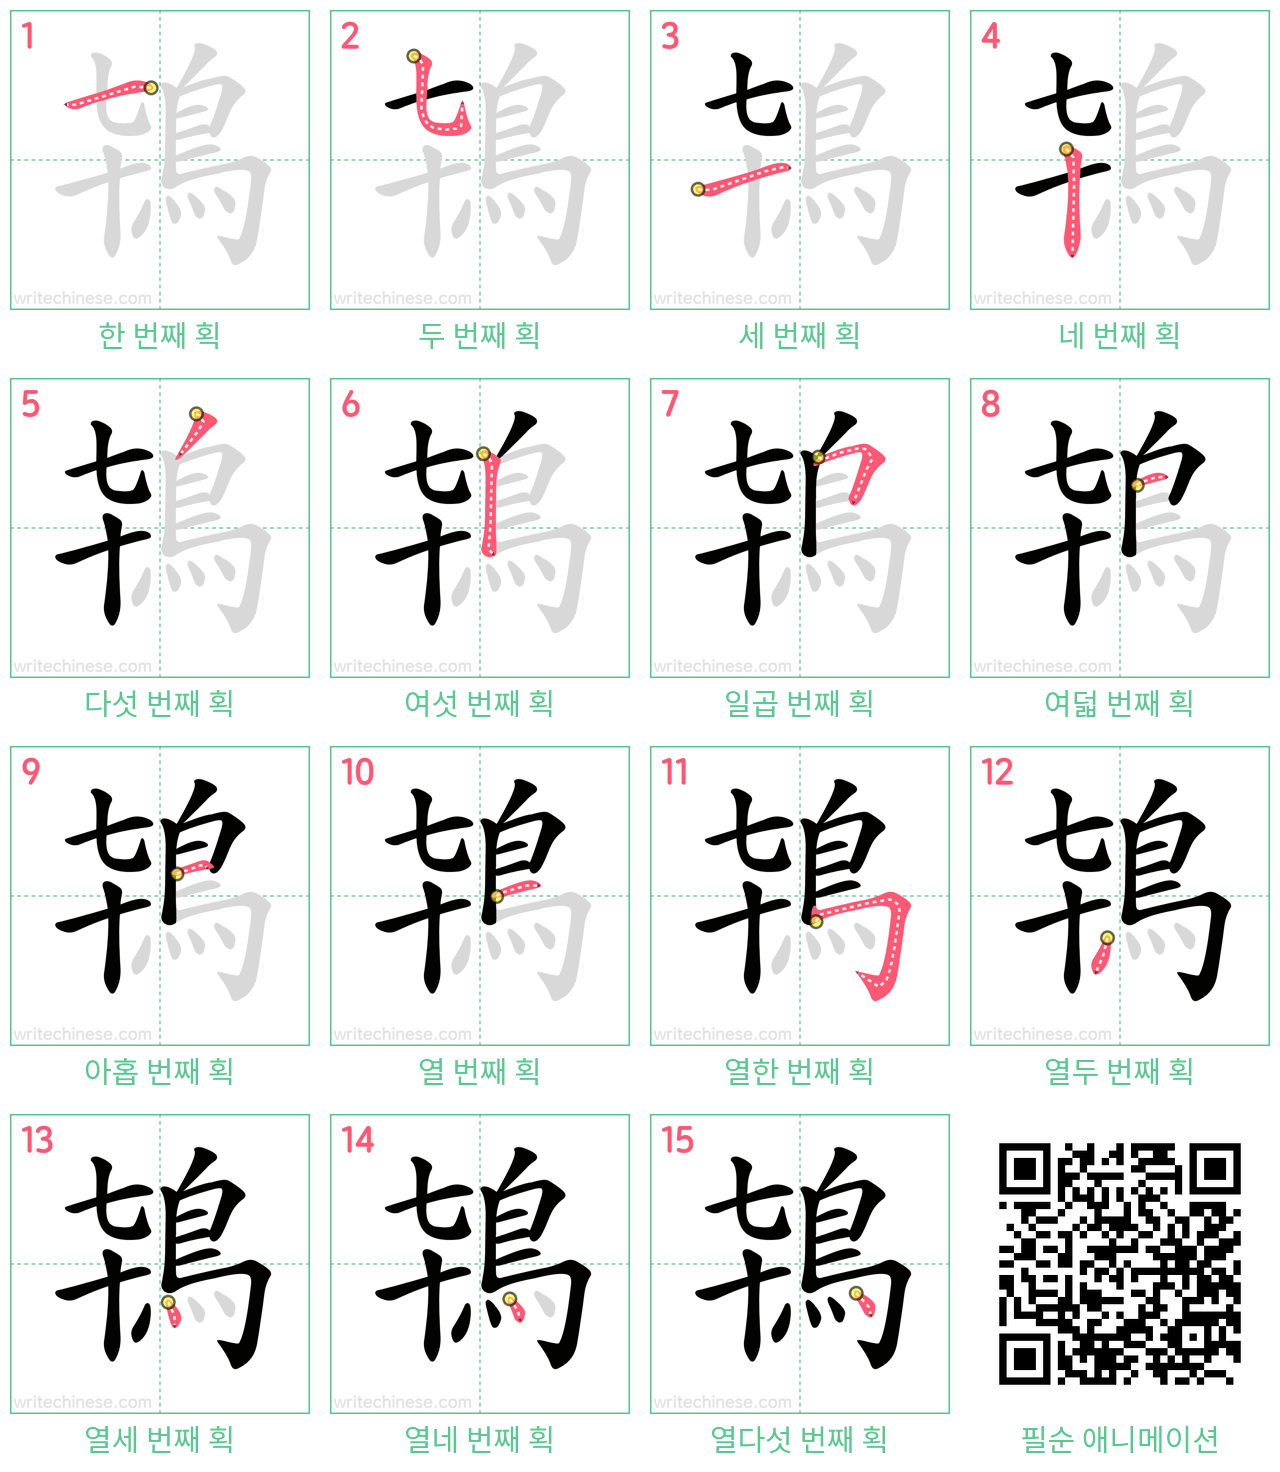 鴇 step-by-step stroke order diagrams